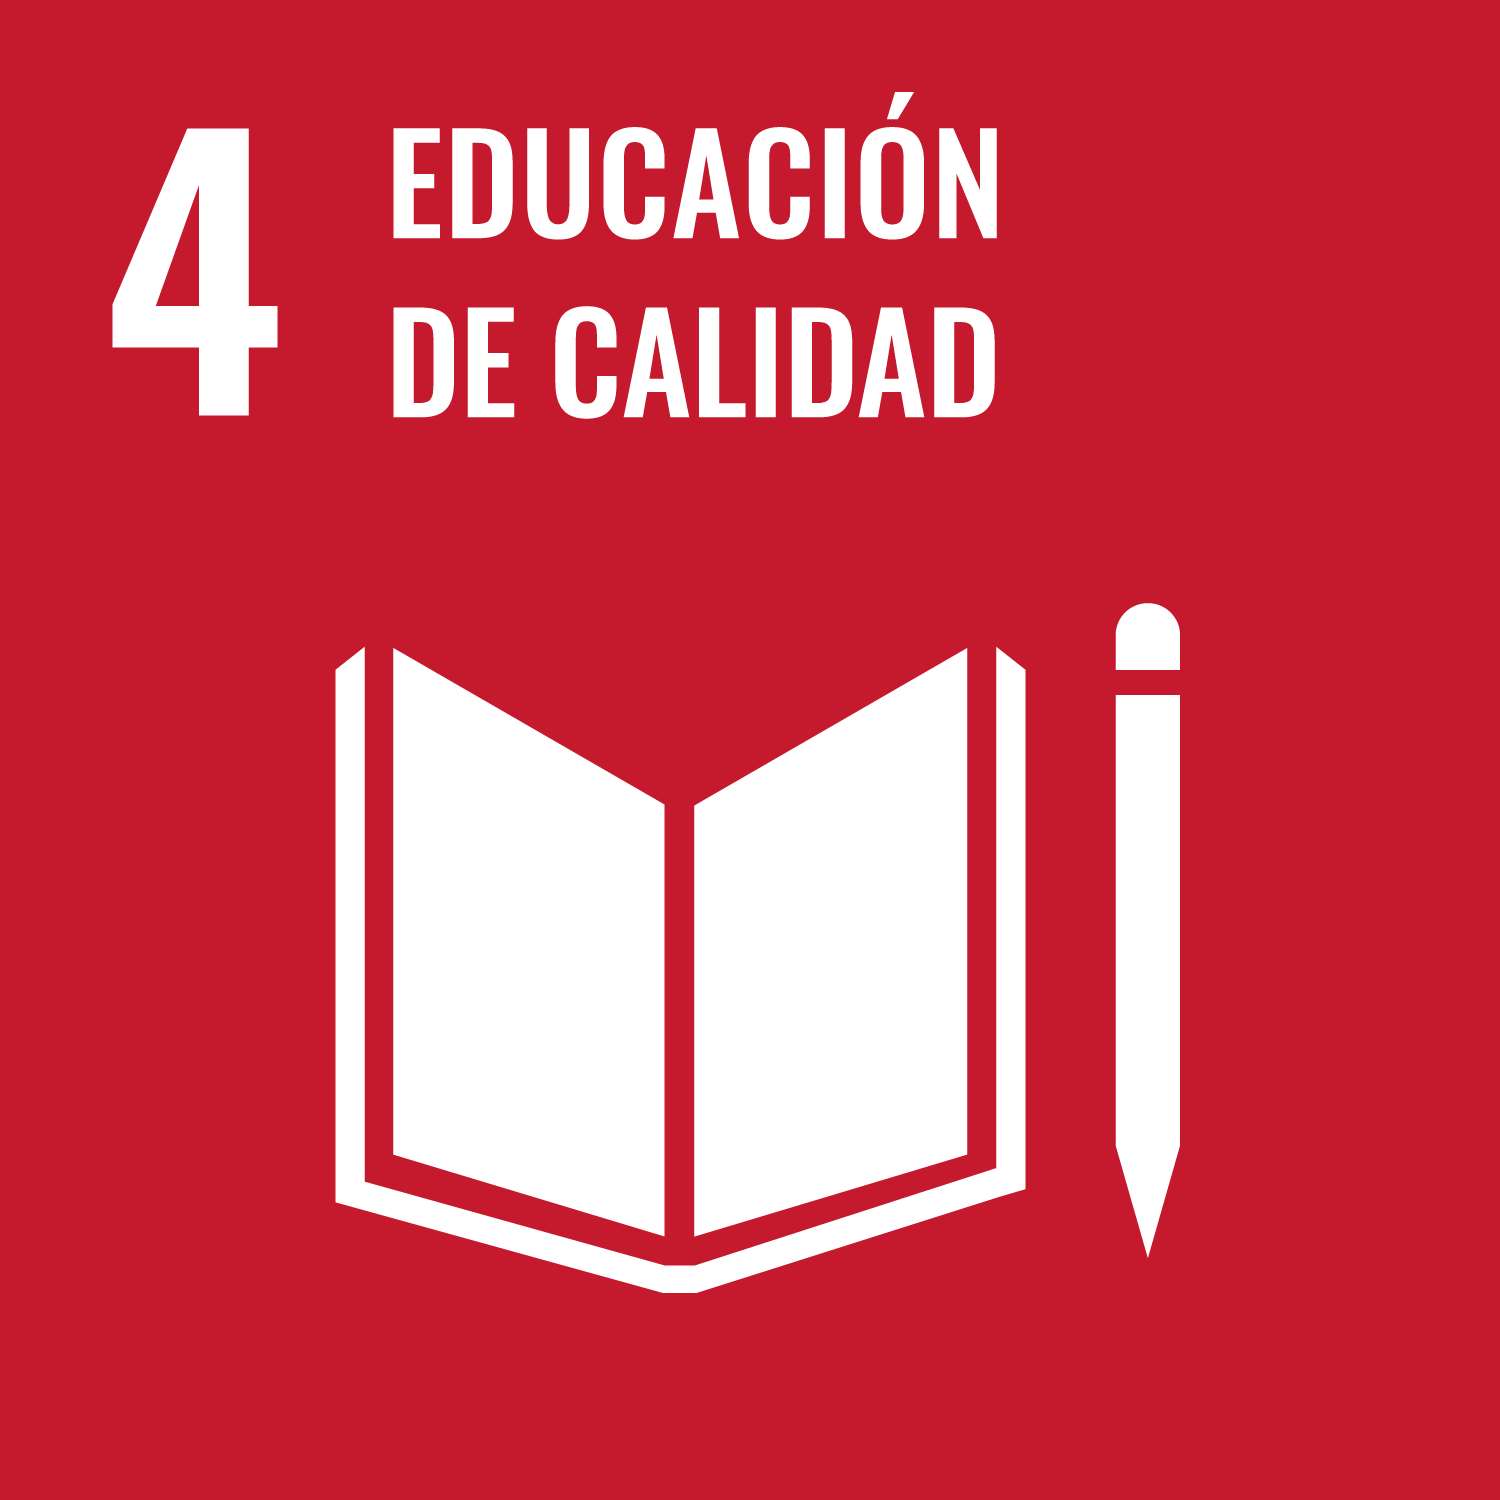 4. Garantizar una educación de calidad inclusiva y equitativa, y promover las oportunidades de aprendizaje permanente para todos.